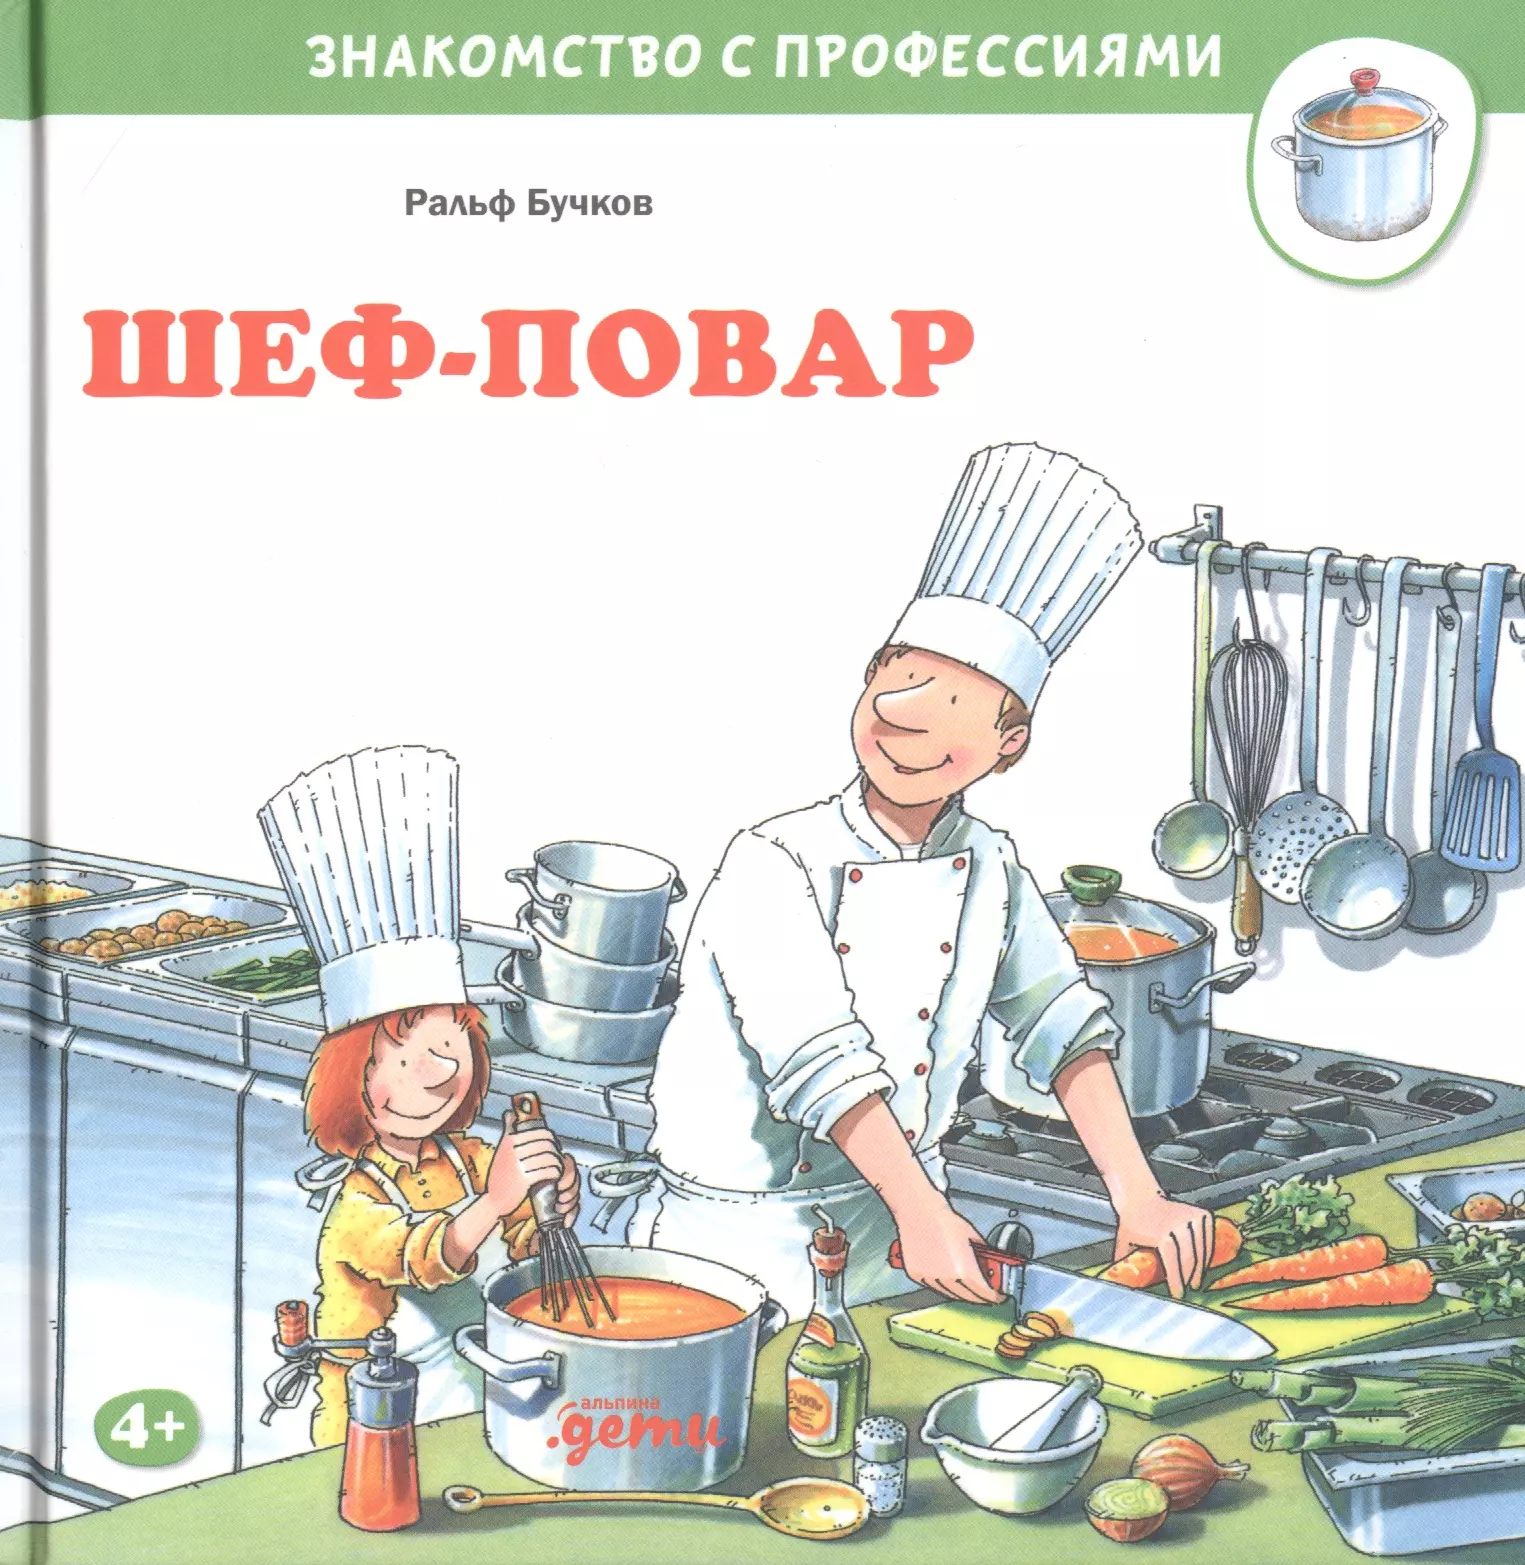 Бучков Ральф - Шеф-повар